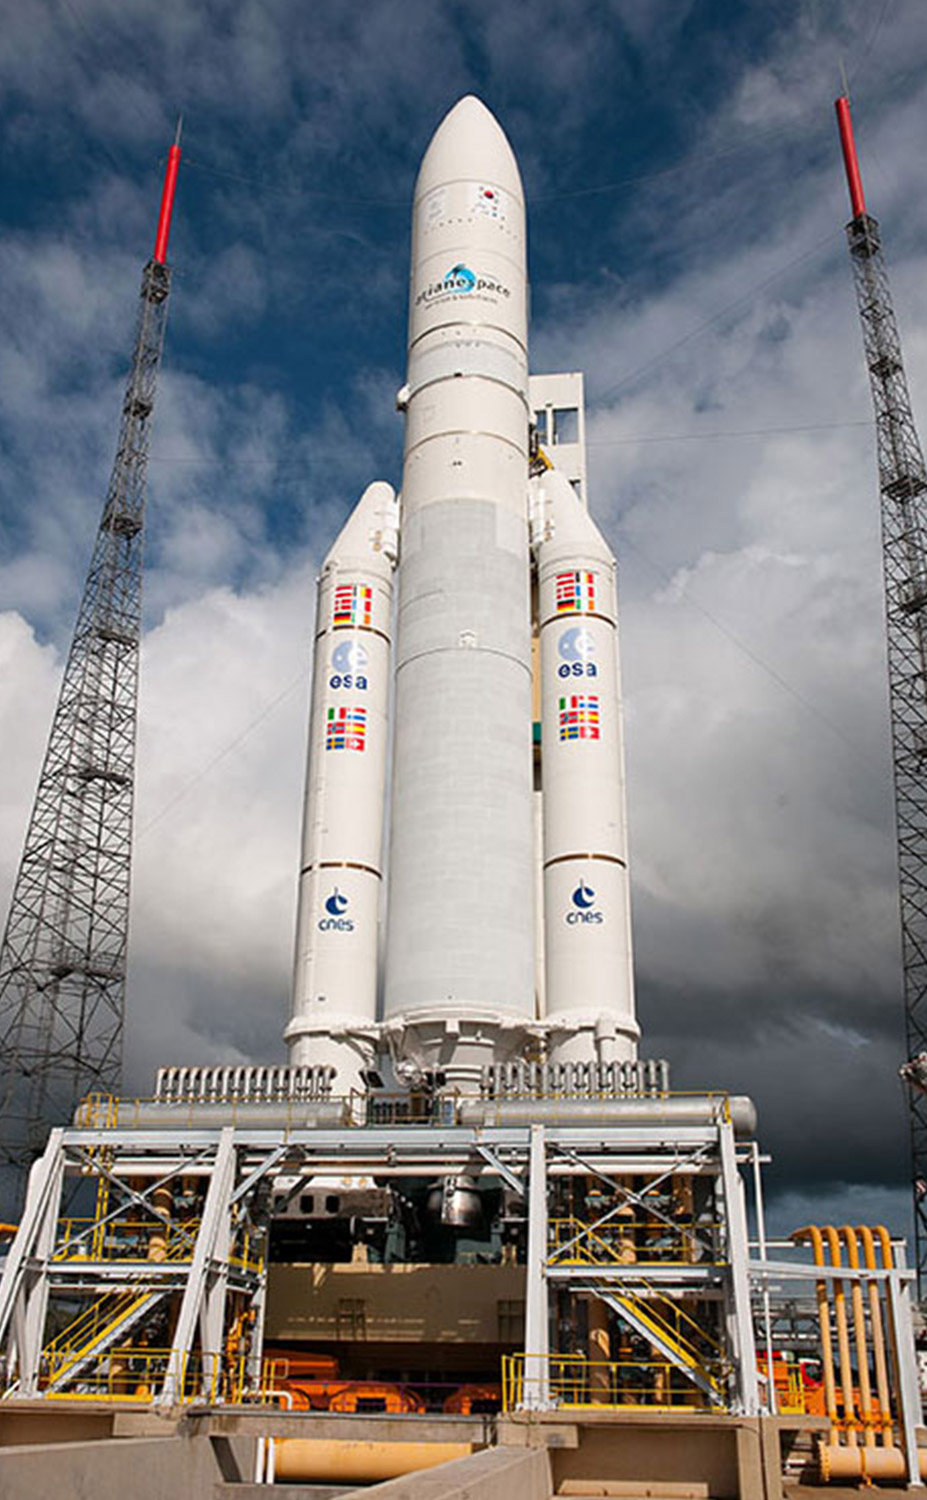 Reference Plataforma de lanzamiento Ariane 5 guyana